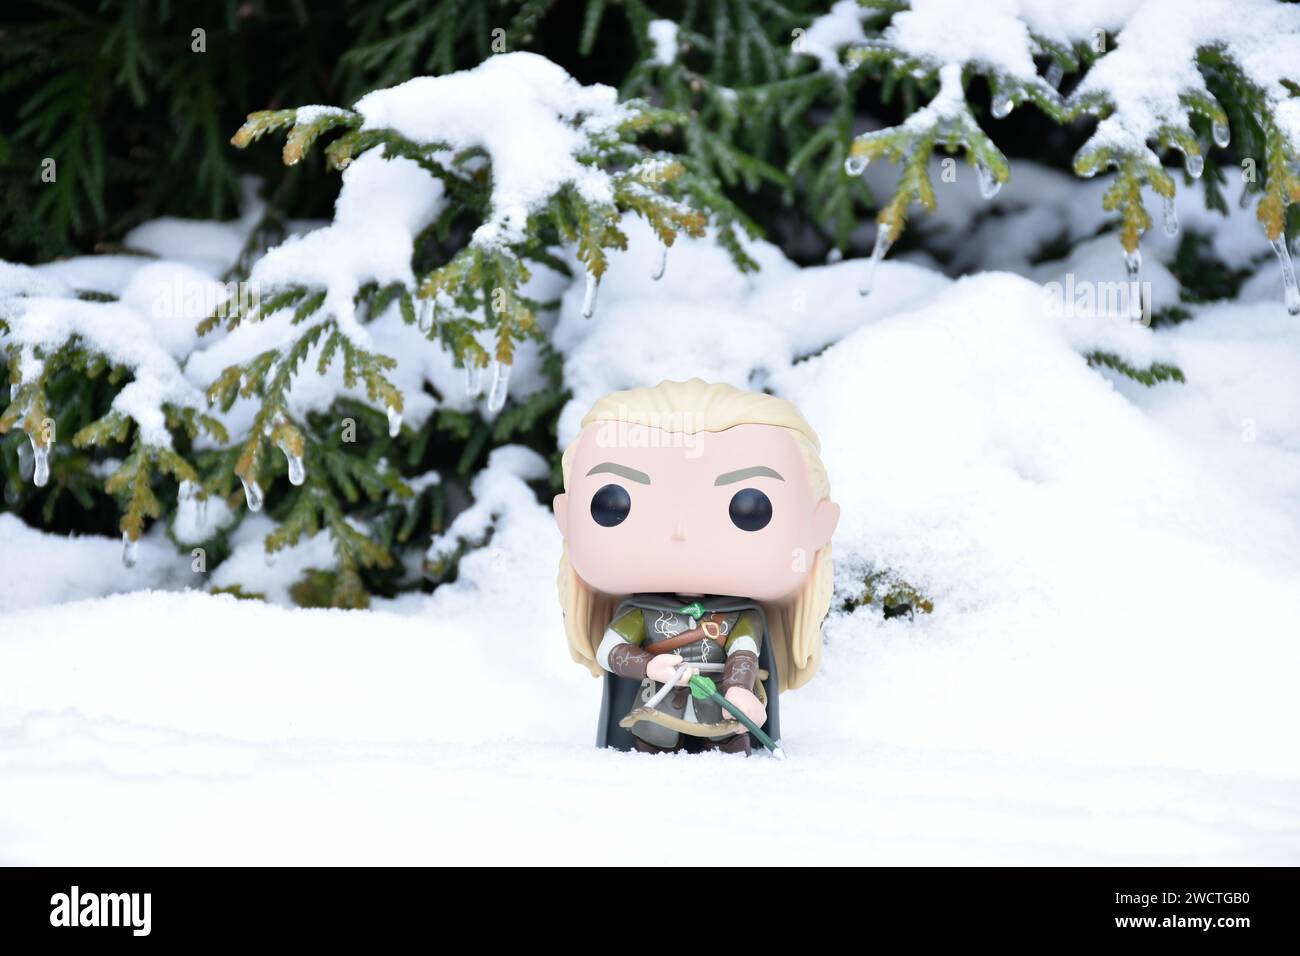 Funko Pop Actionfigur von Elf Legolas aus dem Fantasy-Film der Herr der Ringe. Krieger, der Bogen und Pfeil hält. Winterwald, Schnee, grüne Wälder. Stockfoto